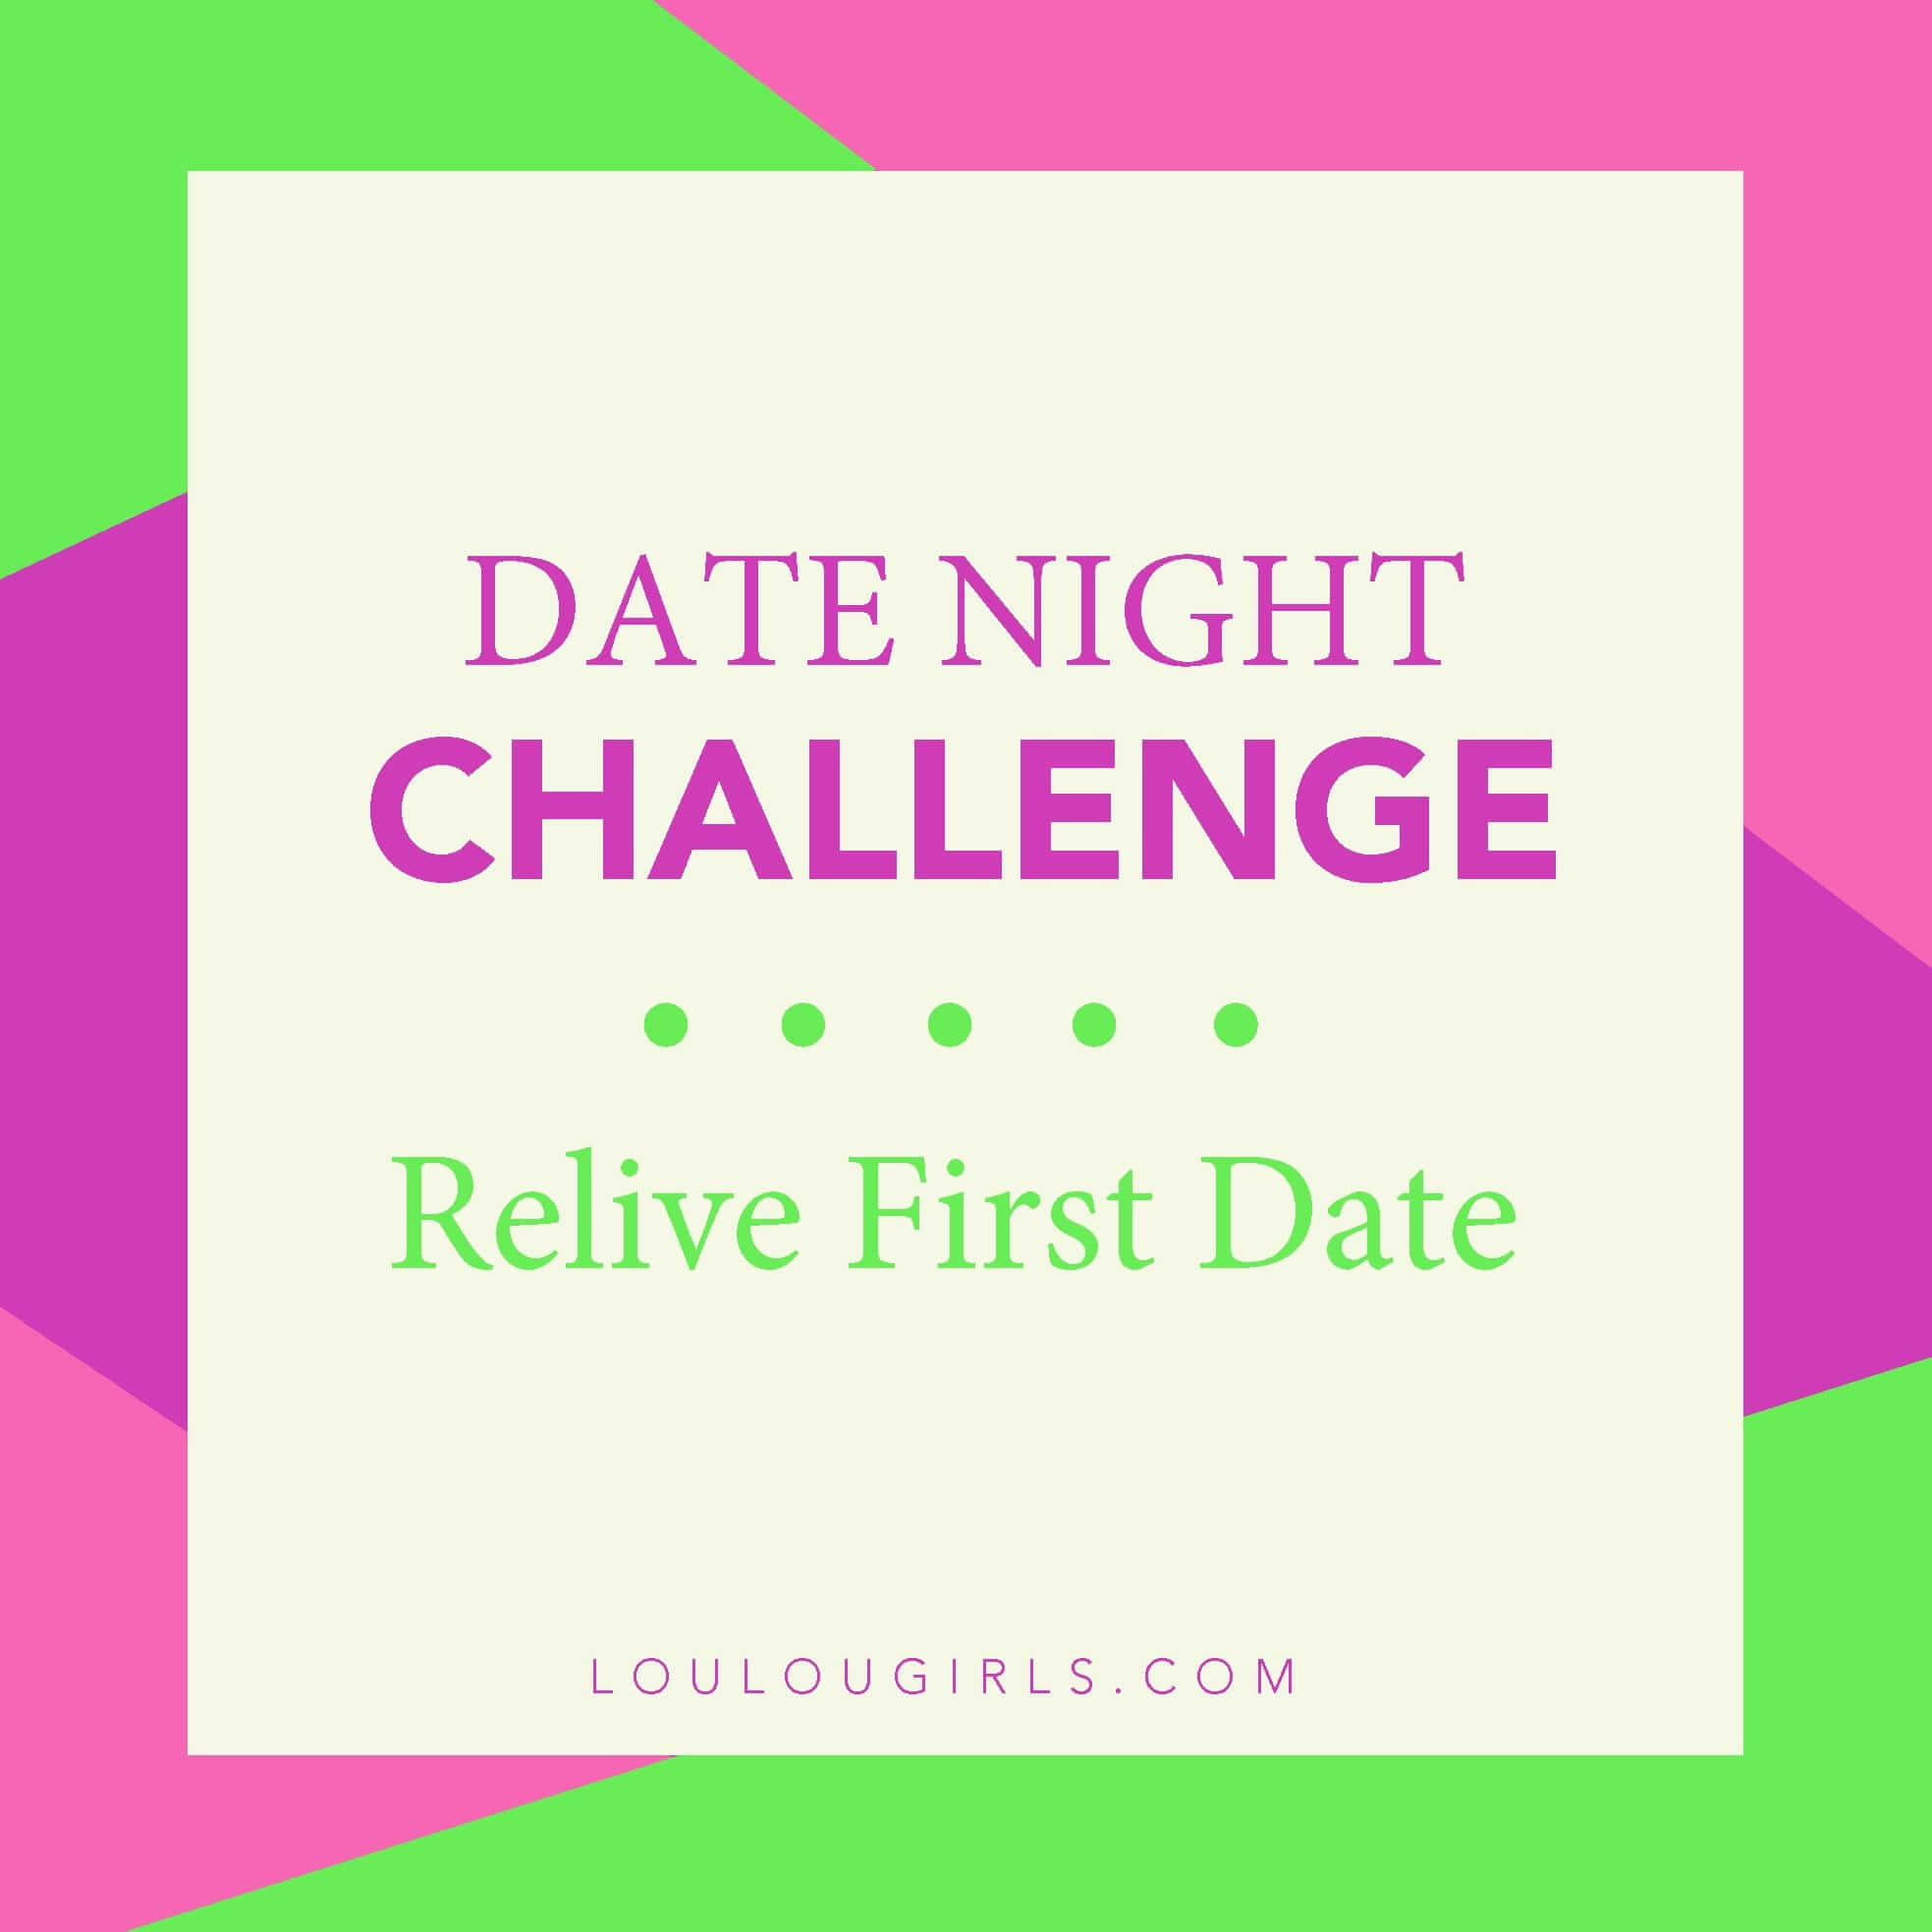 2. Date Night Challenge INSTA